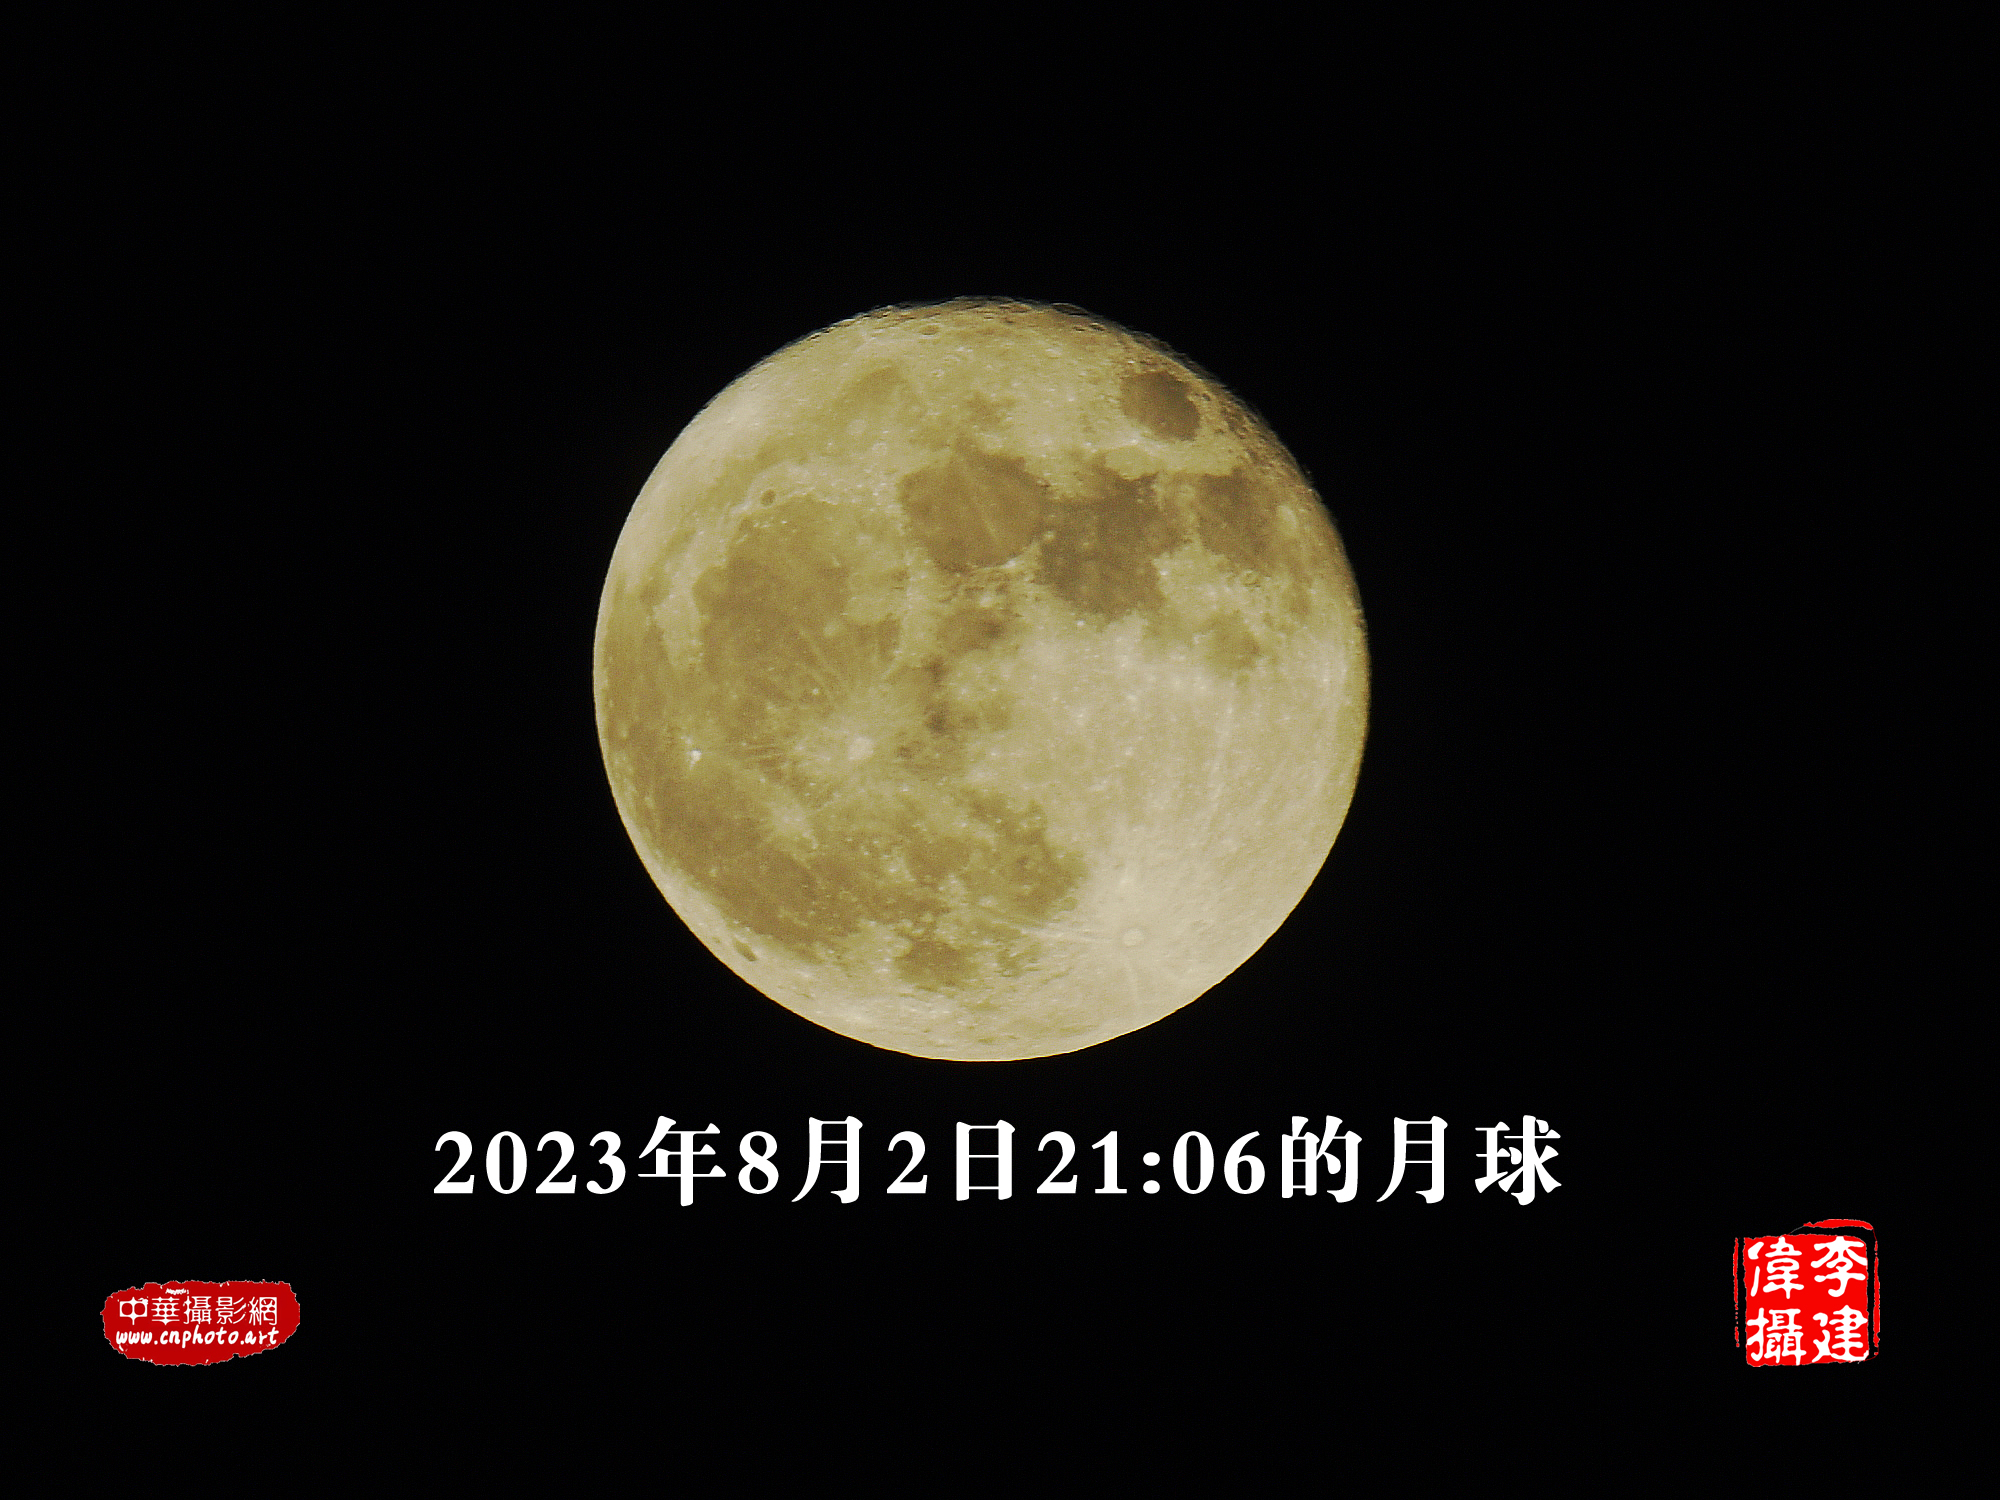 2023年8月2日21:06的月球